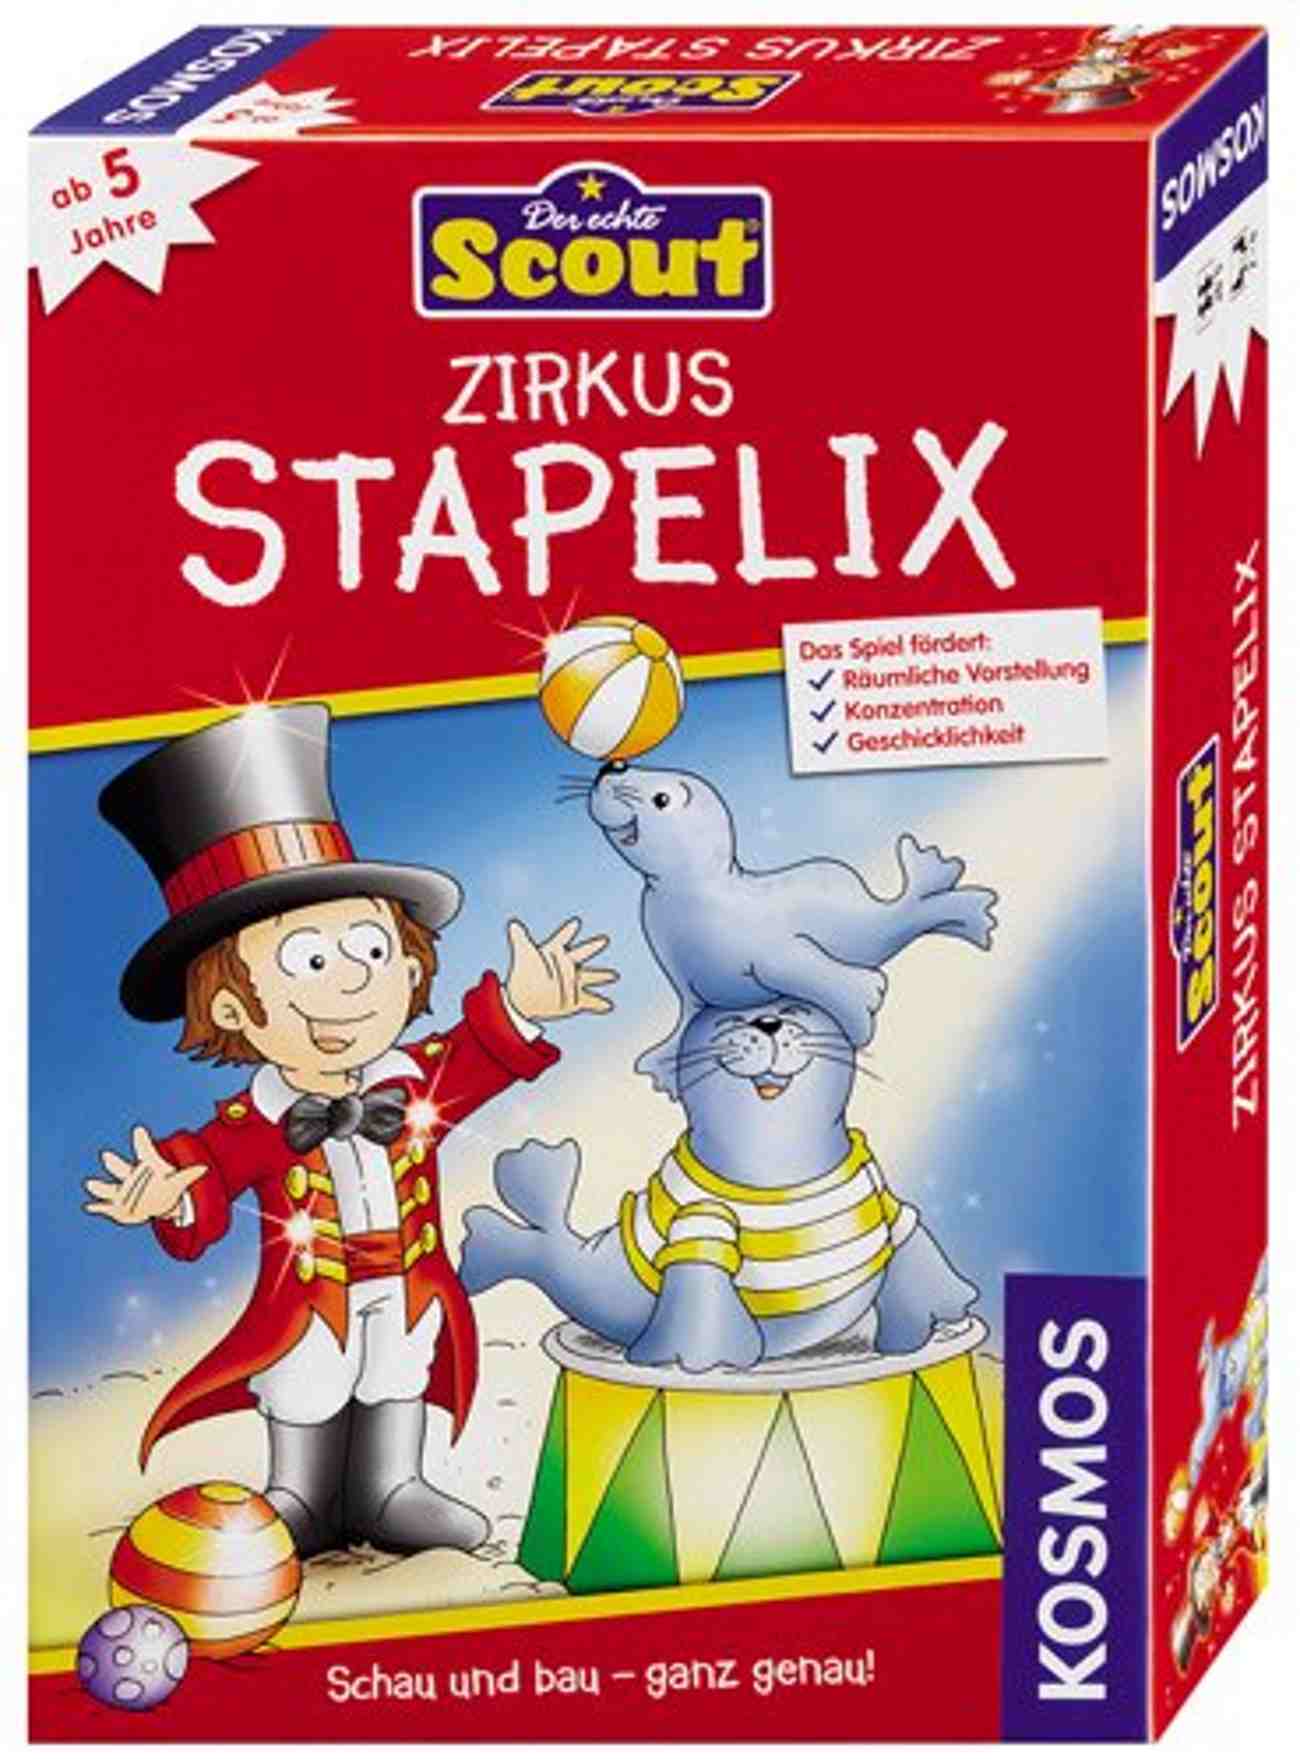 Zirkus Stapelix – Scout